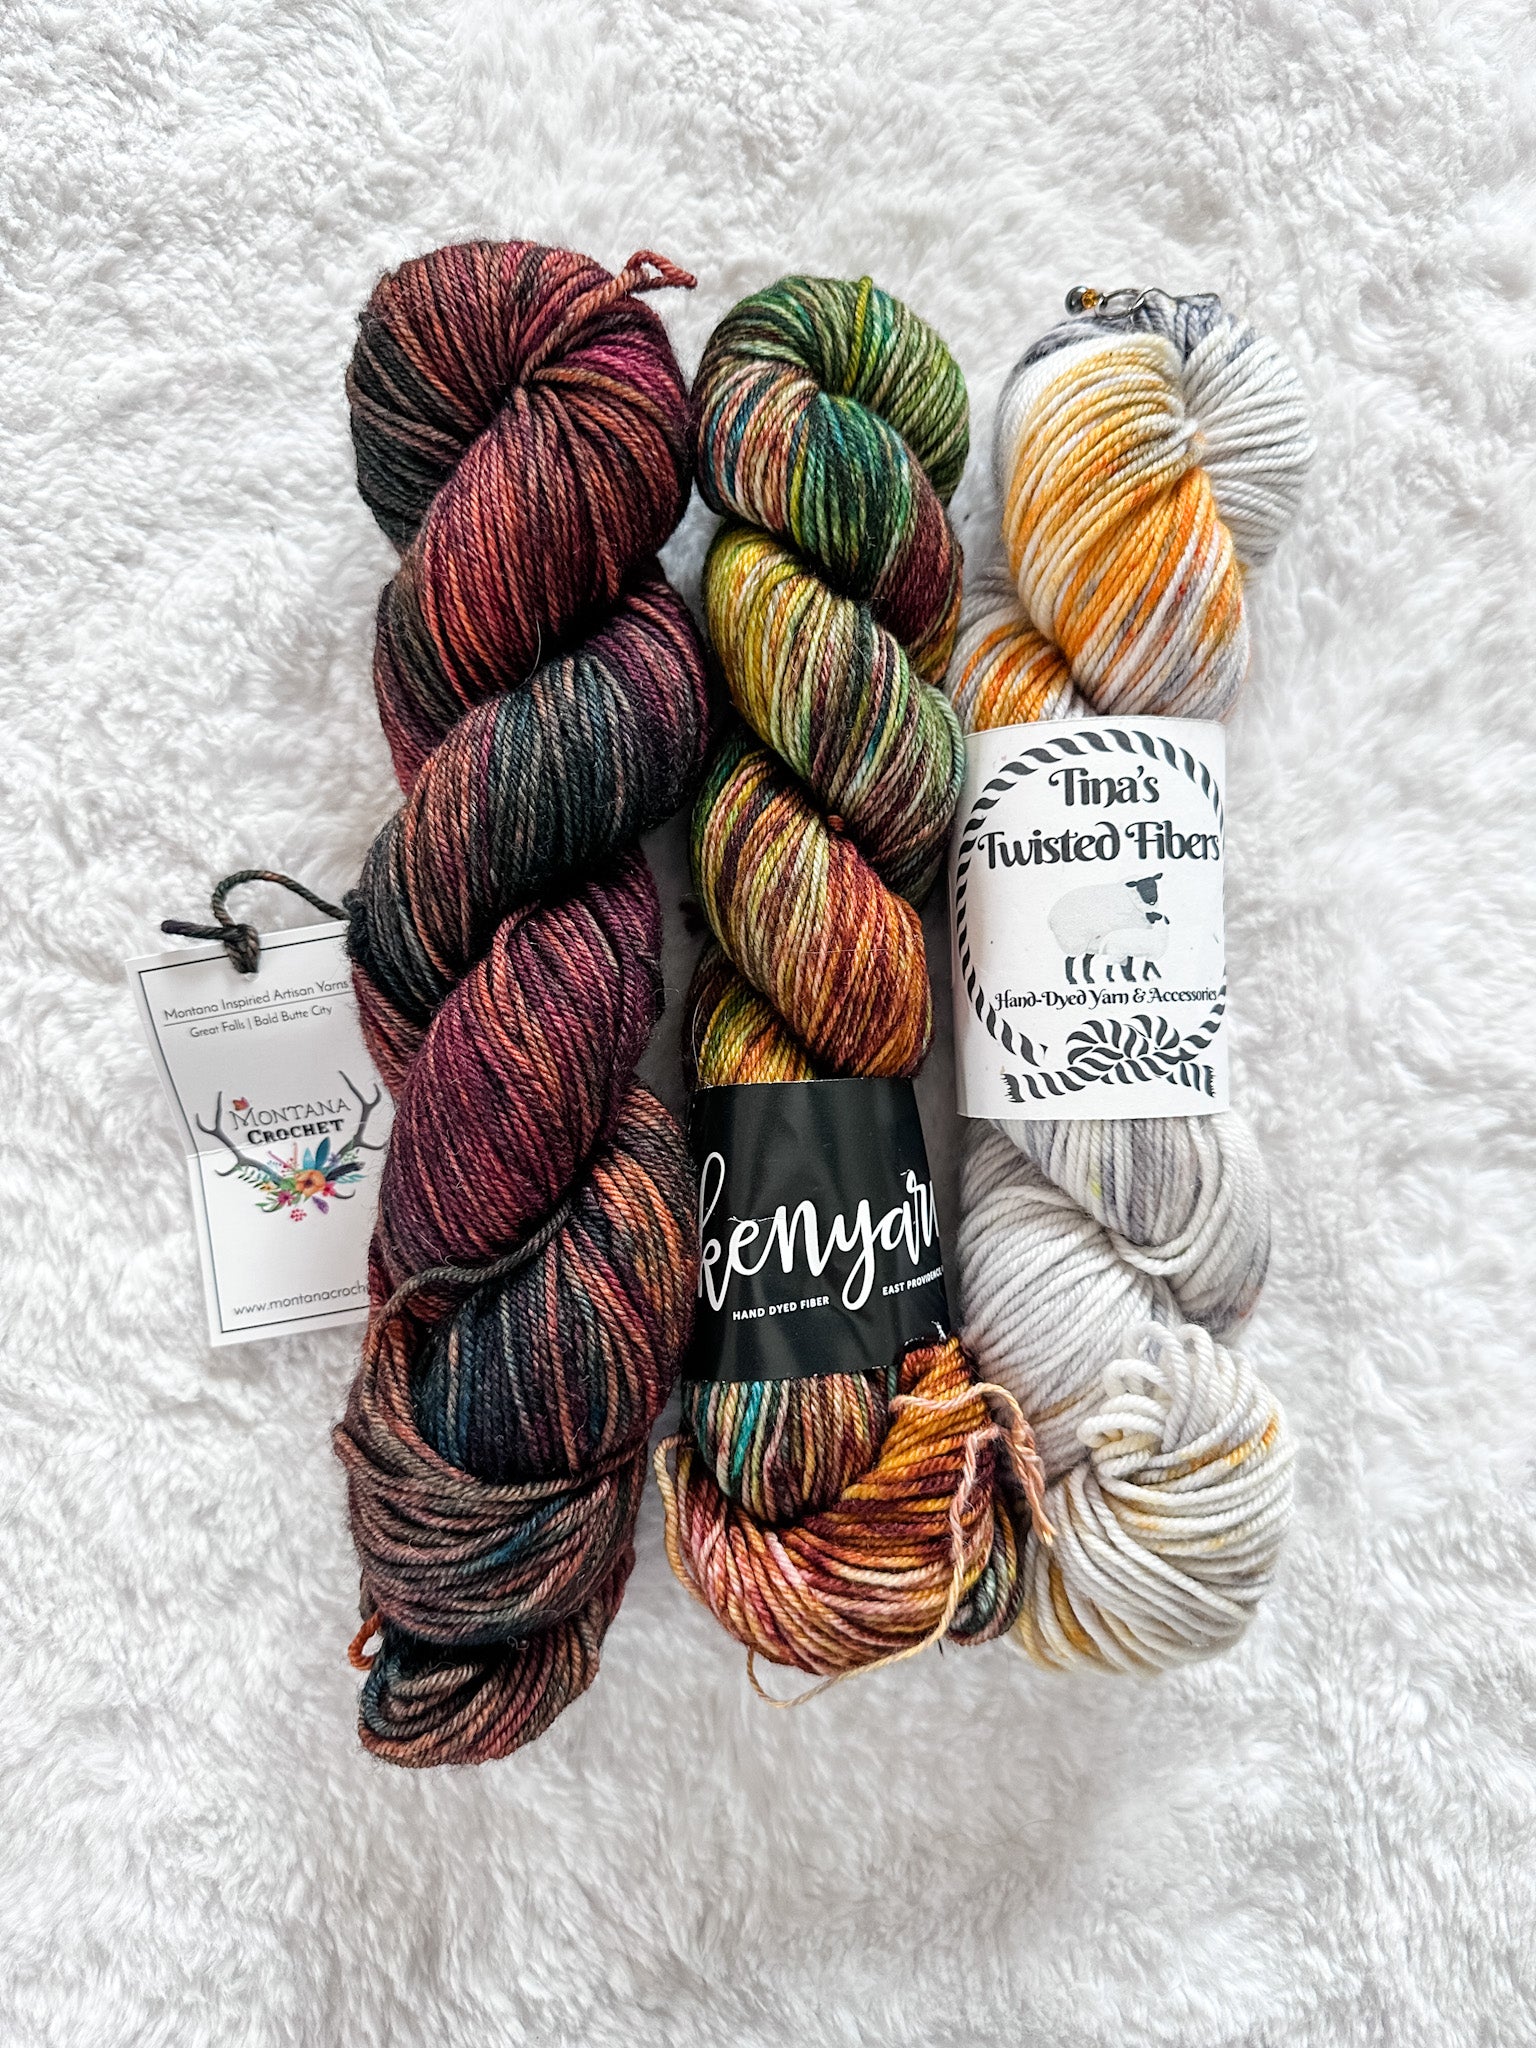 Lot 69 - Kenyarn, TIna's, and Montana Crochet